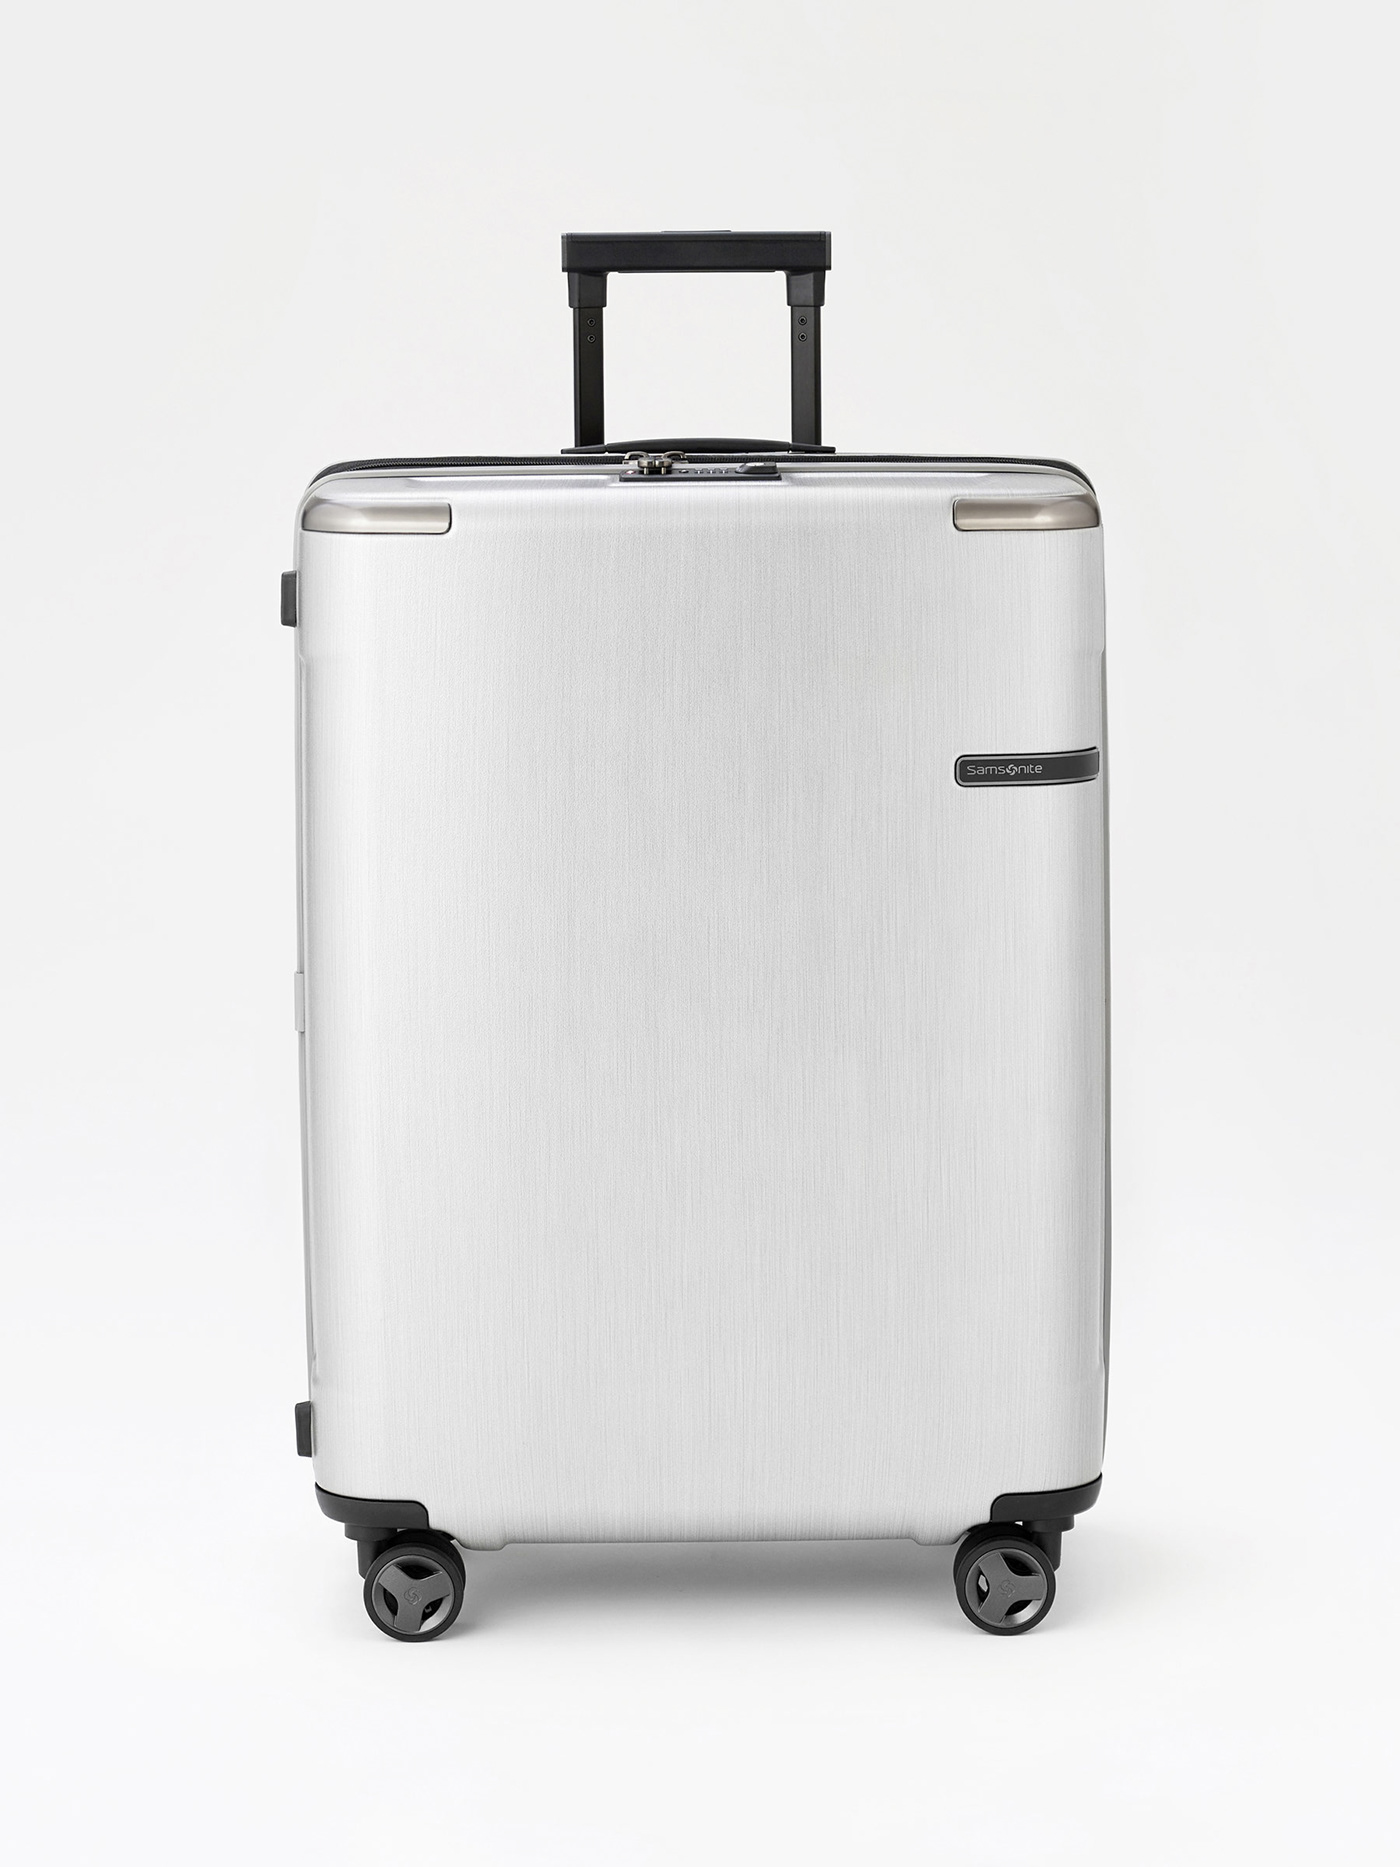 aluminum cmf industrial design  luggage plane premium product design  samsonite suitcase Travel